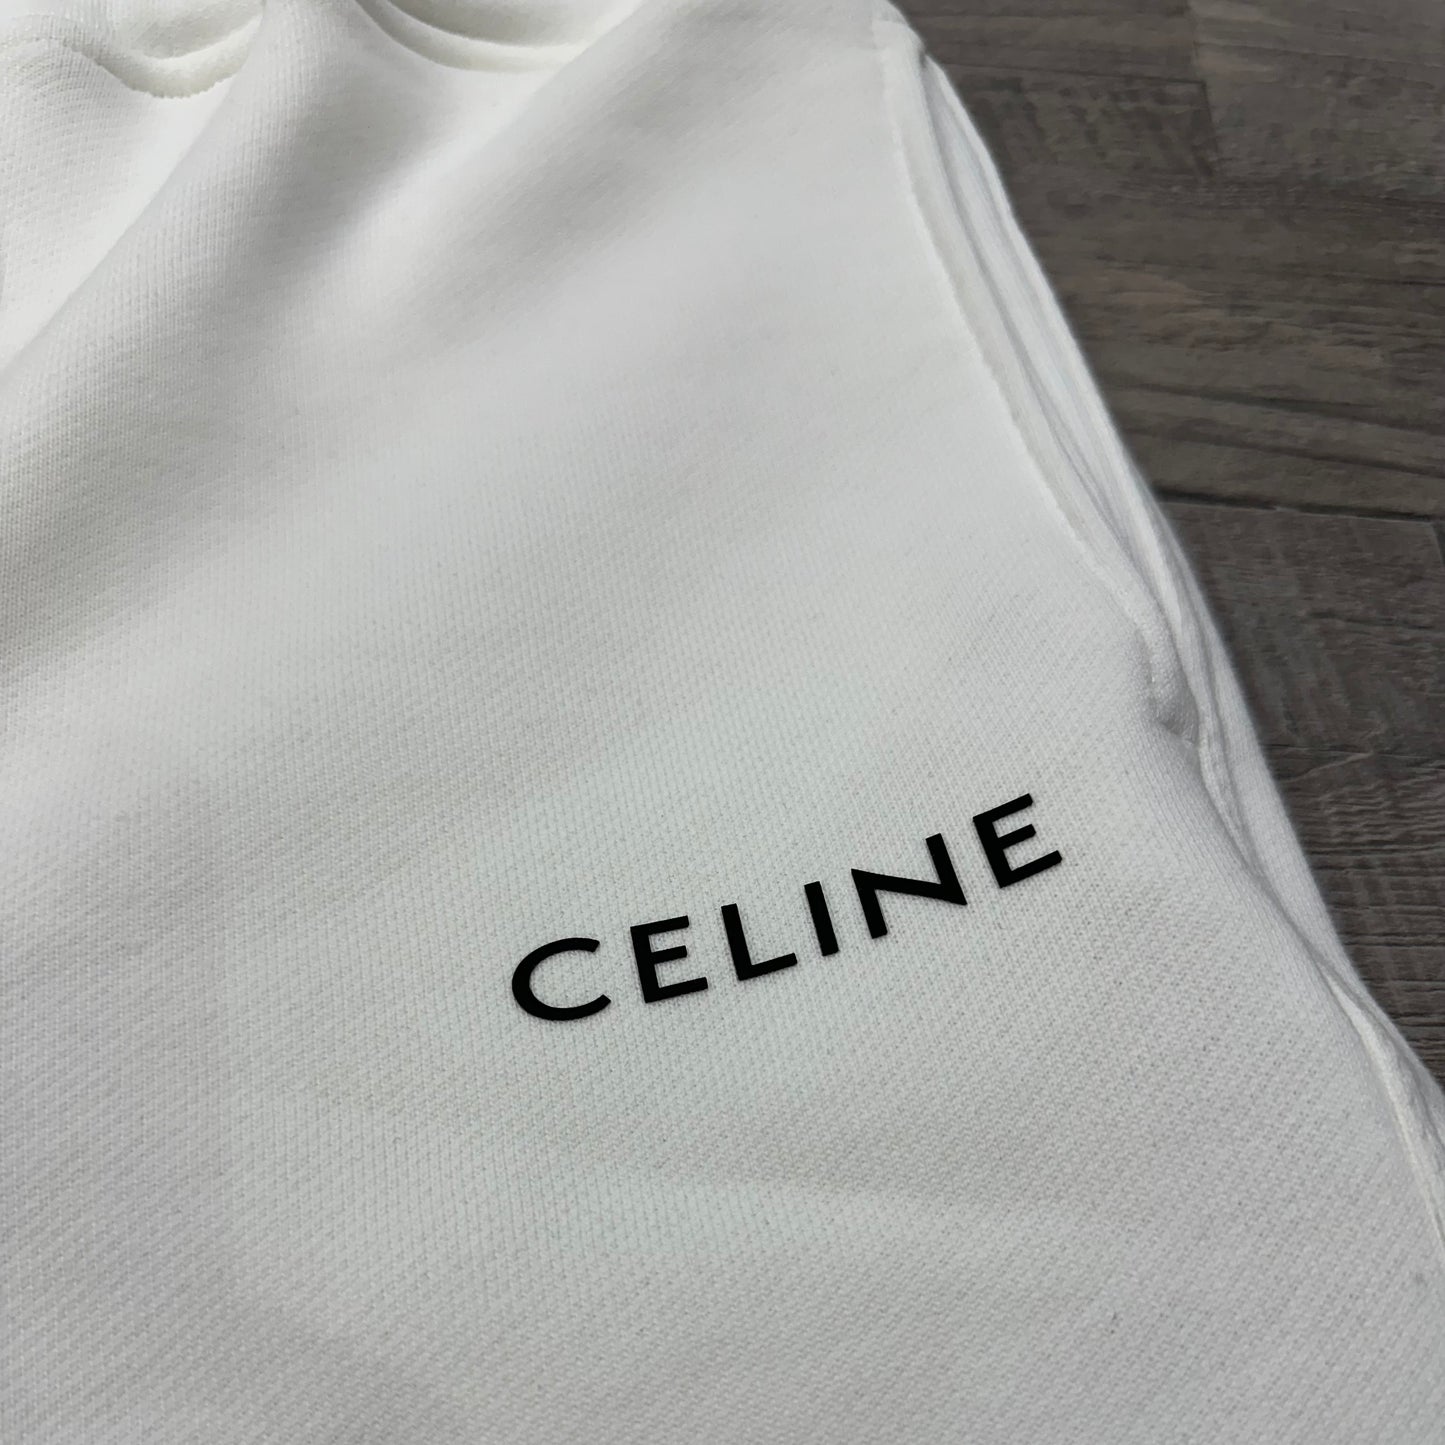 Celine Set White 37